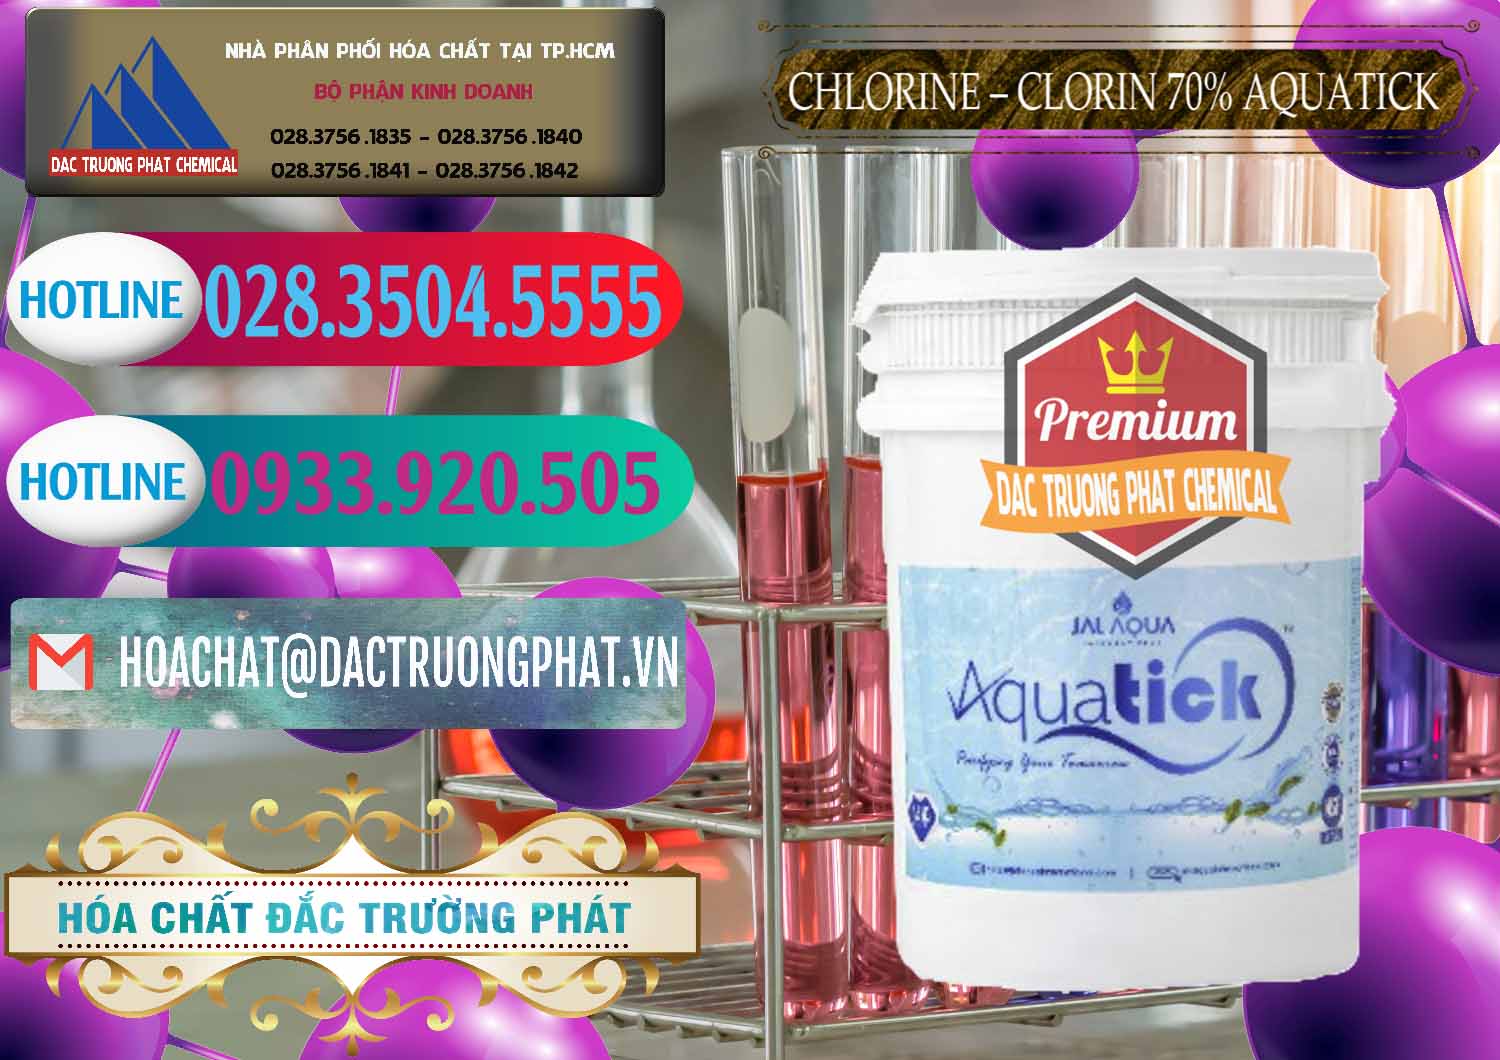 Công ty nhập khẩu & bán Chlorine – Clorin 70% Aquatick Thùng Cao Jal Aqua Ấn Độ India - 0237 - Bán ( phân phối ) hóa chất tại TP.HCM - truongphat.vn